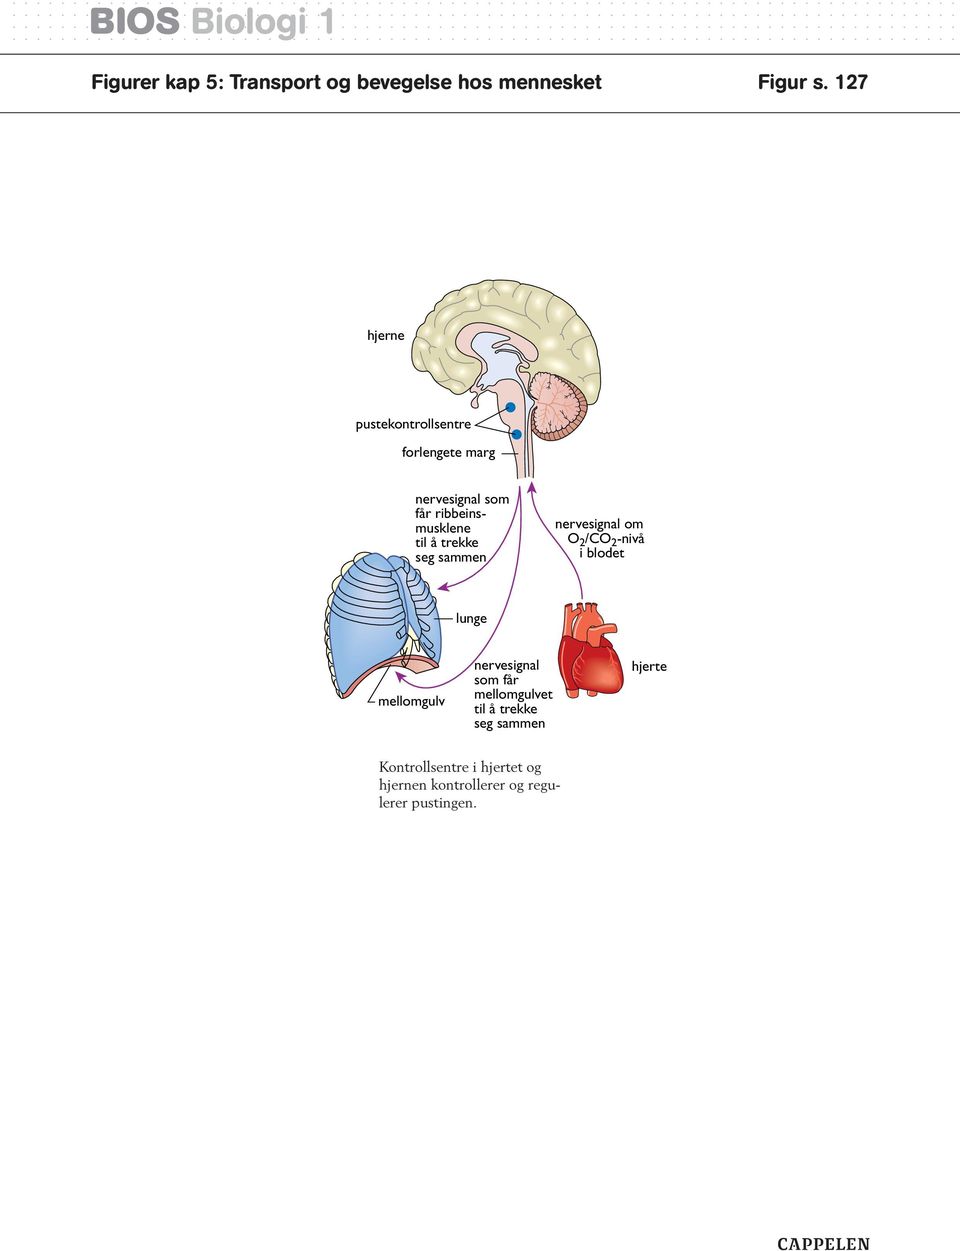 trekke seg sammen nervesignal om O 2 /CO 2 -nivå i blodet lunge mellomgulv nervesignal som